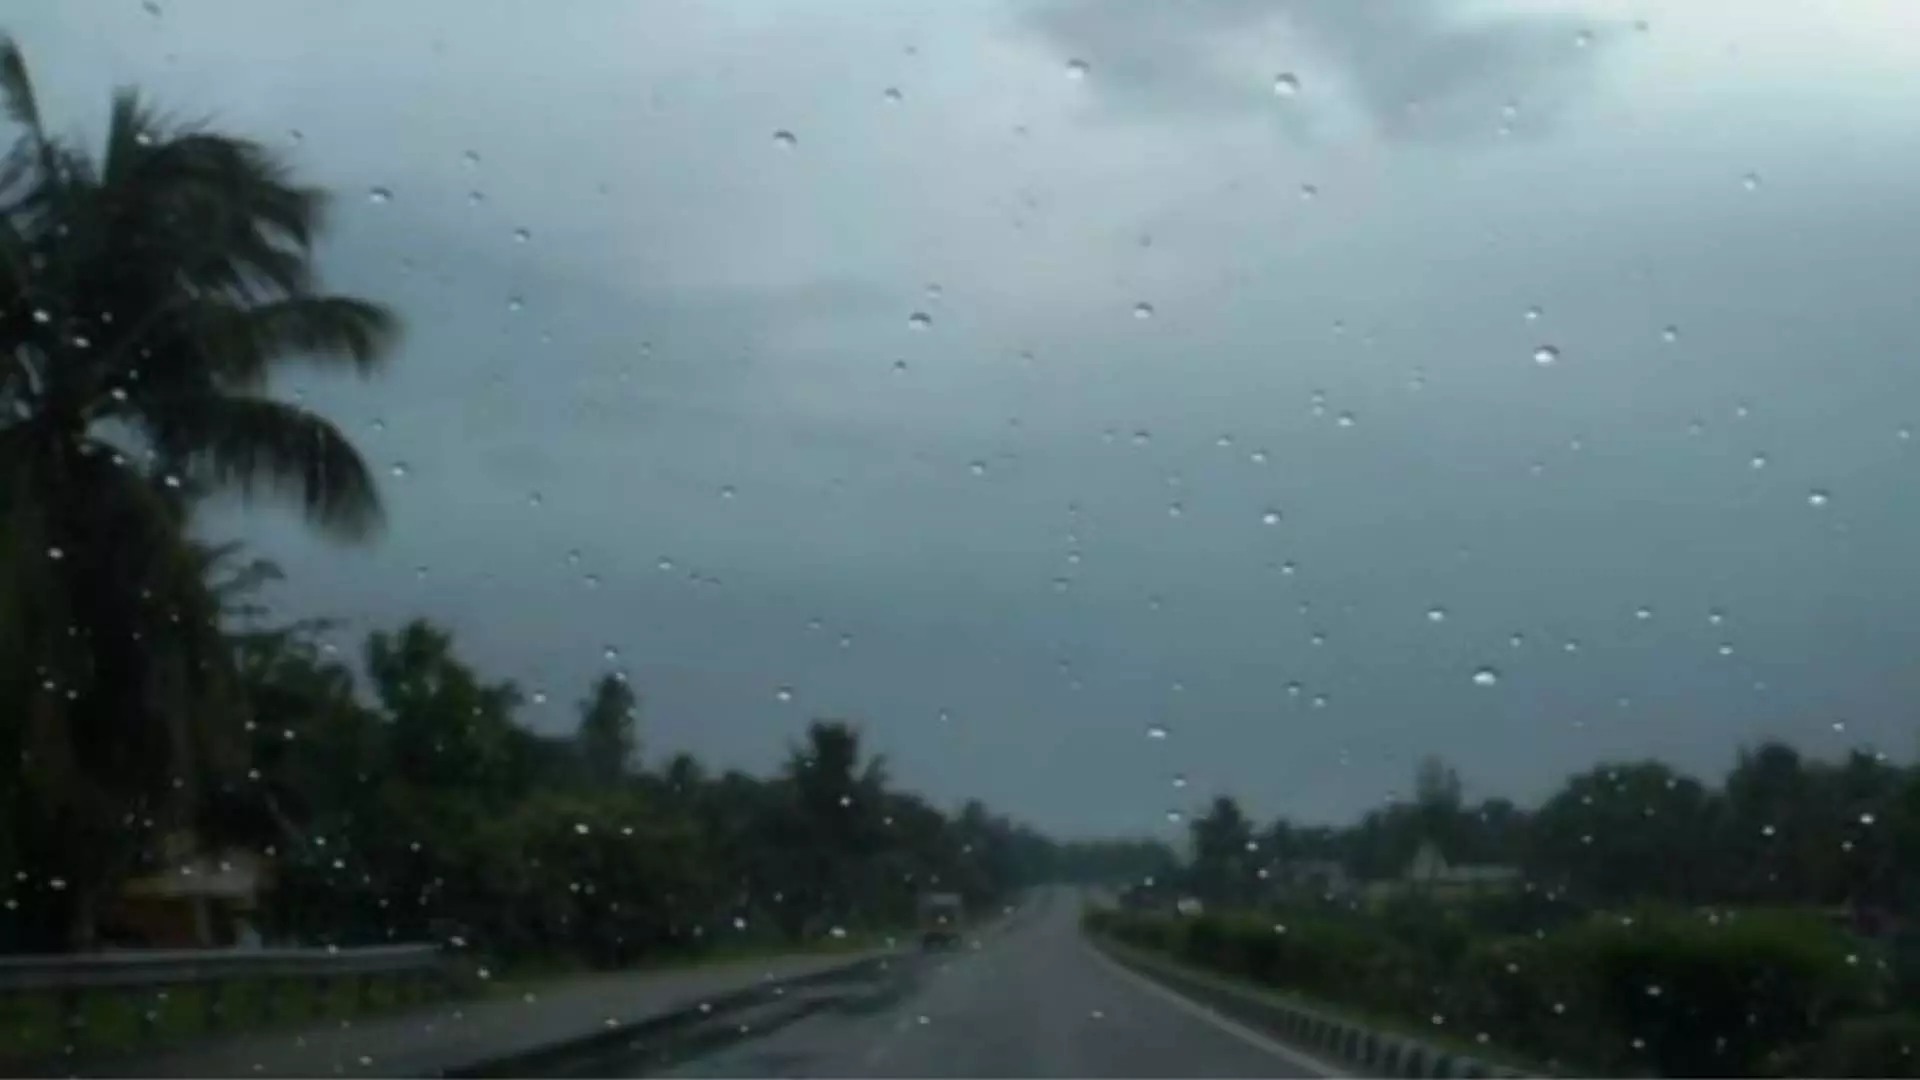 Bengaluru: IMD का कहना है कि शहर में हल्की बारिश और बादल छाए रहने की संभावना